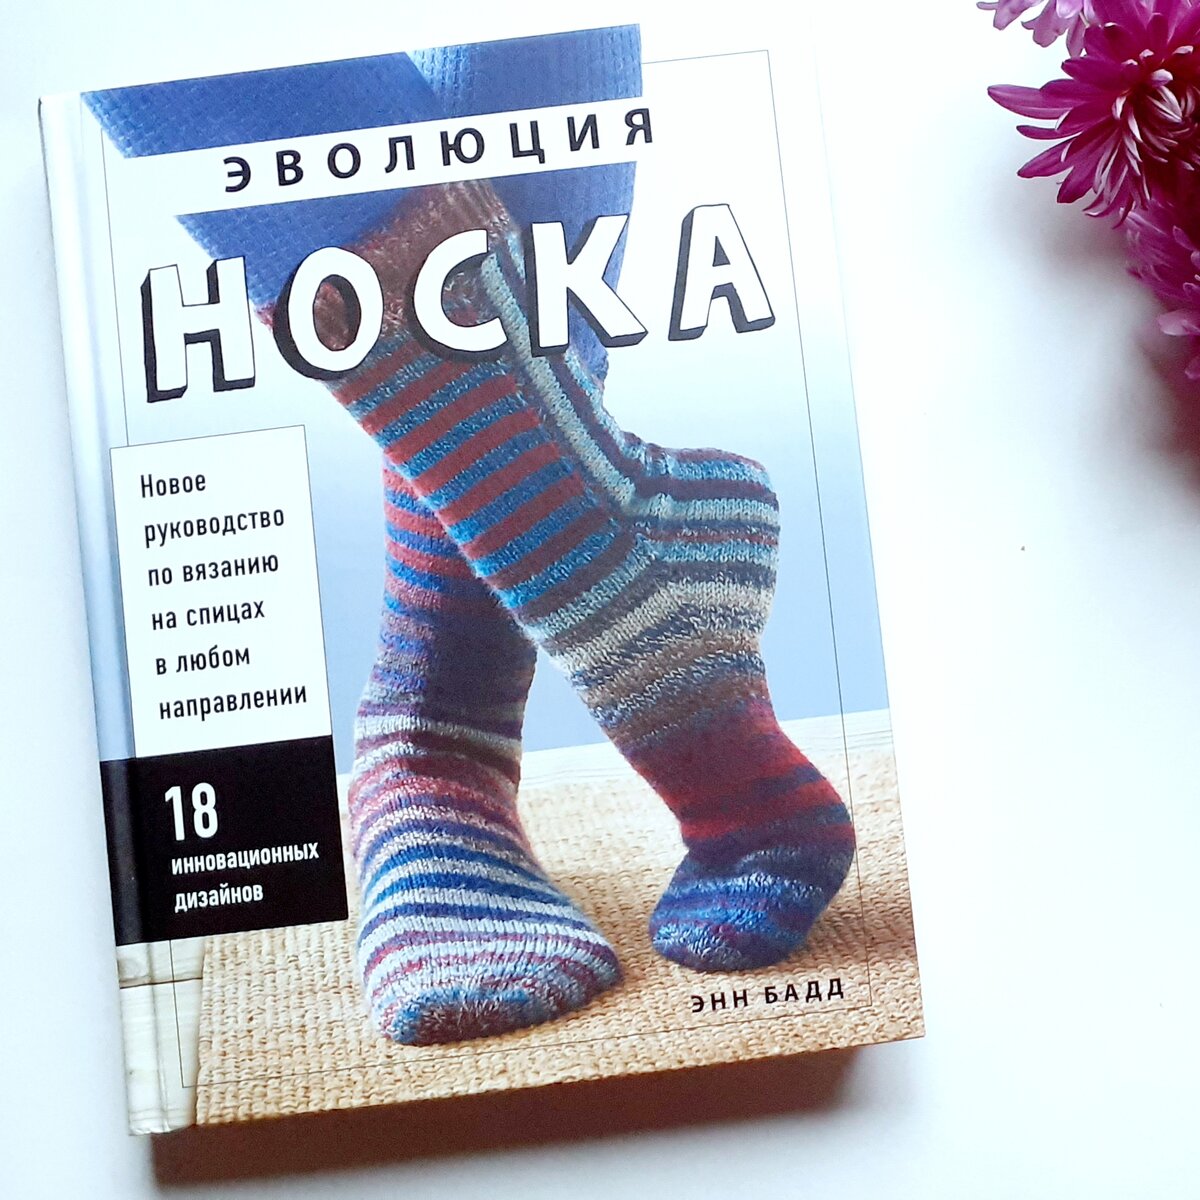 Сколько способов вязания носков вы знаете? В моей копилке всего шесть: 5 крючком и один спицами, ещё бабушка когда-то учила.